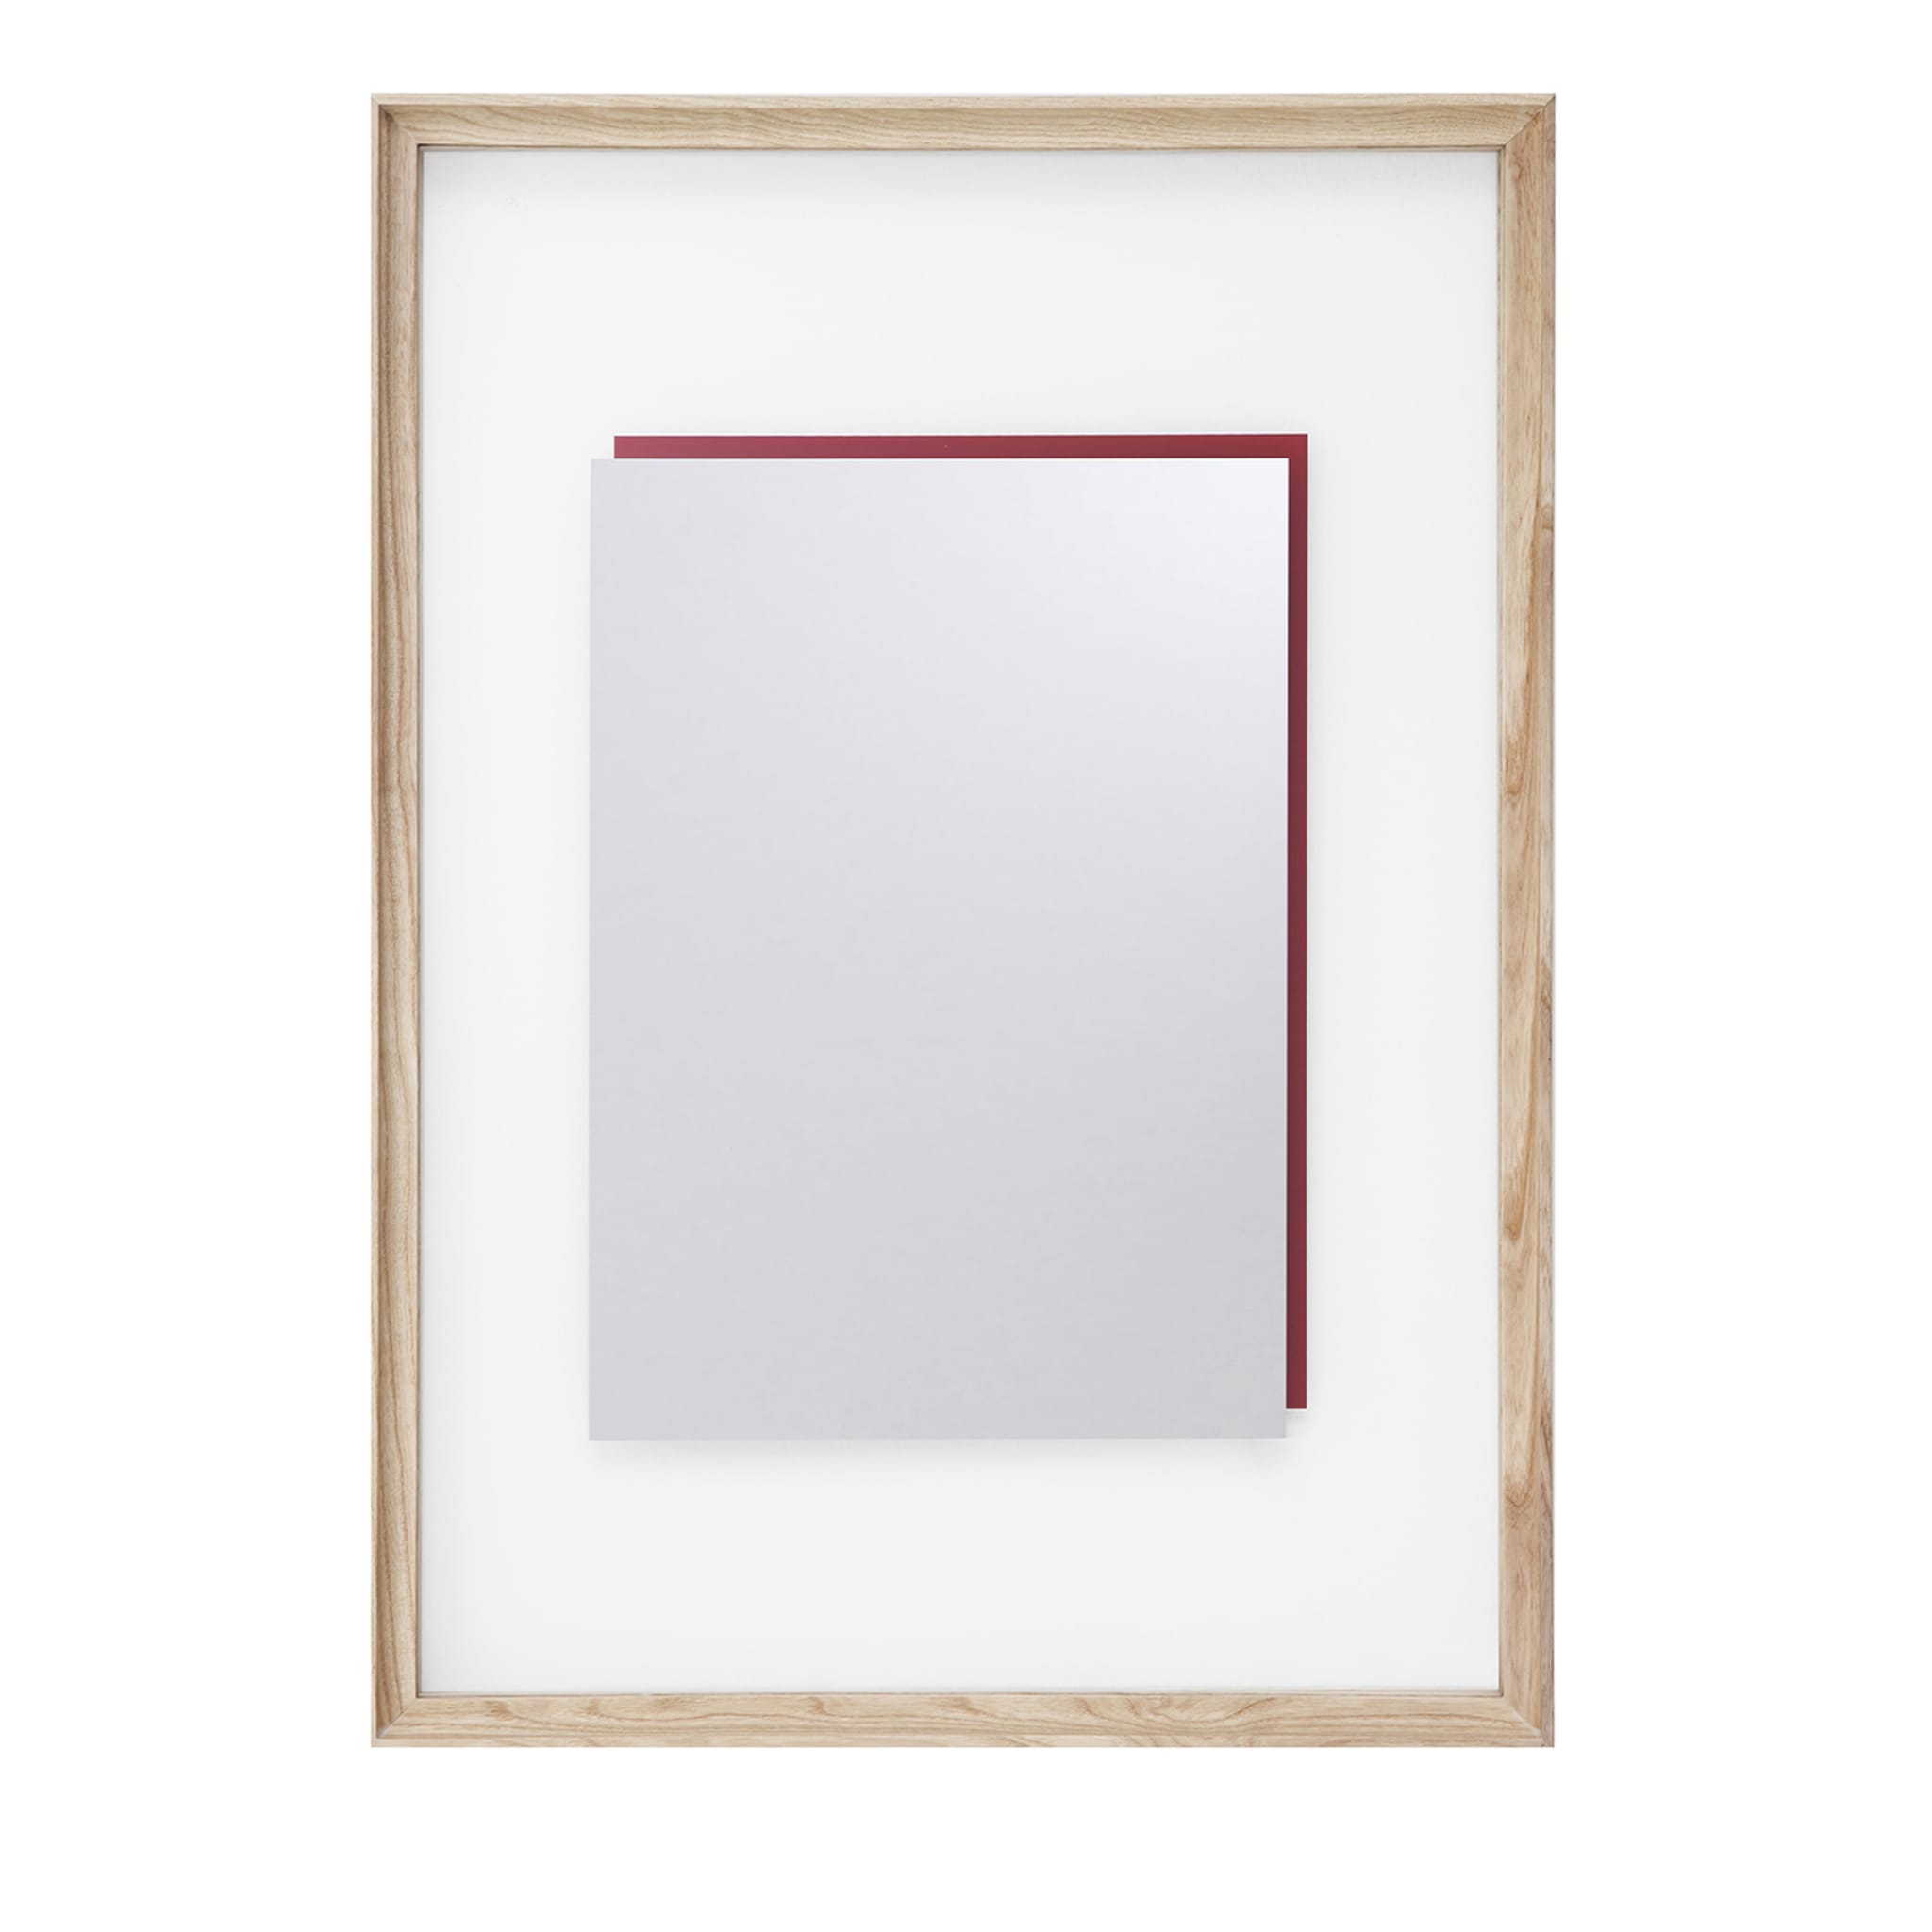 Deadline Who's Afraid of Red Rectangular mirror #1 - Hauptansicht